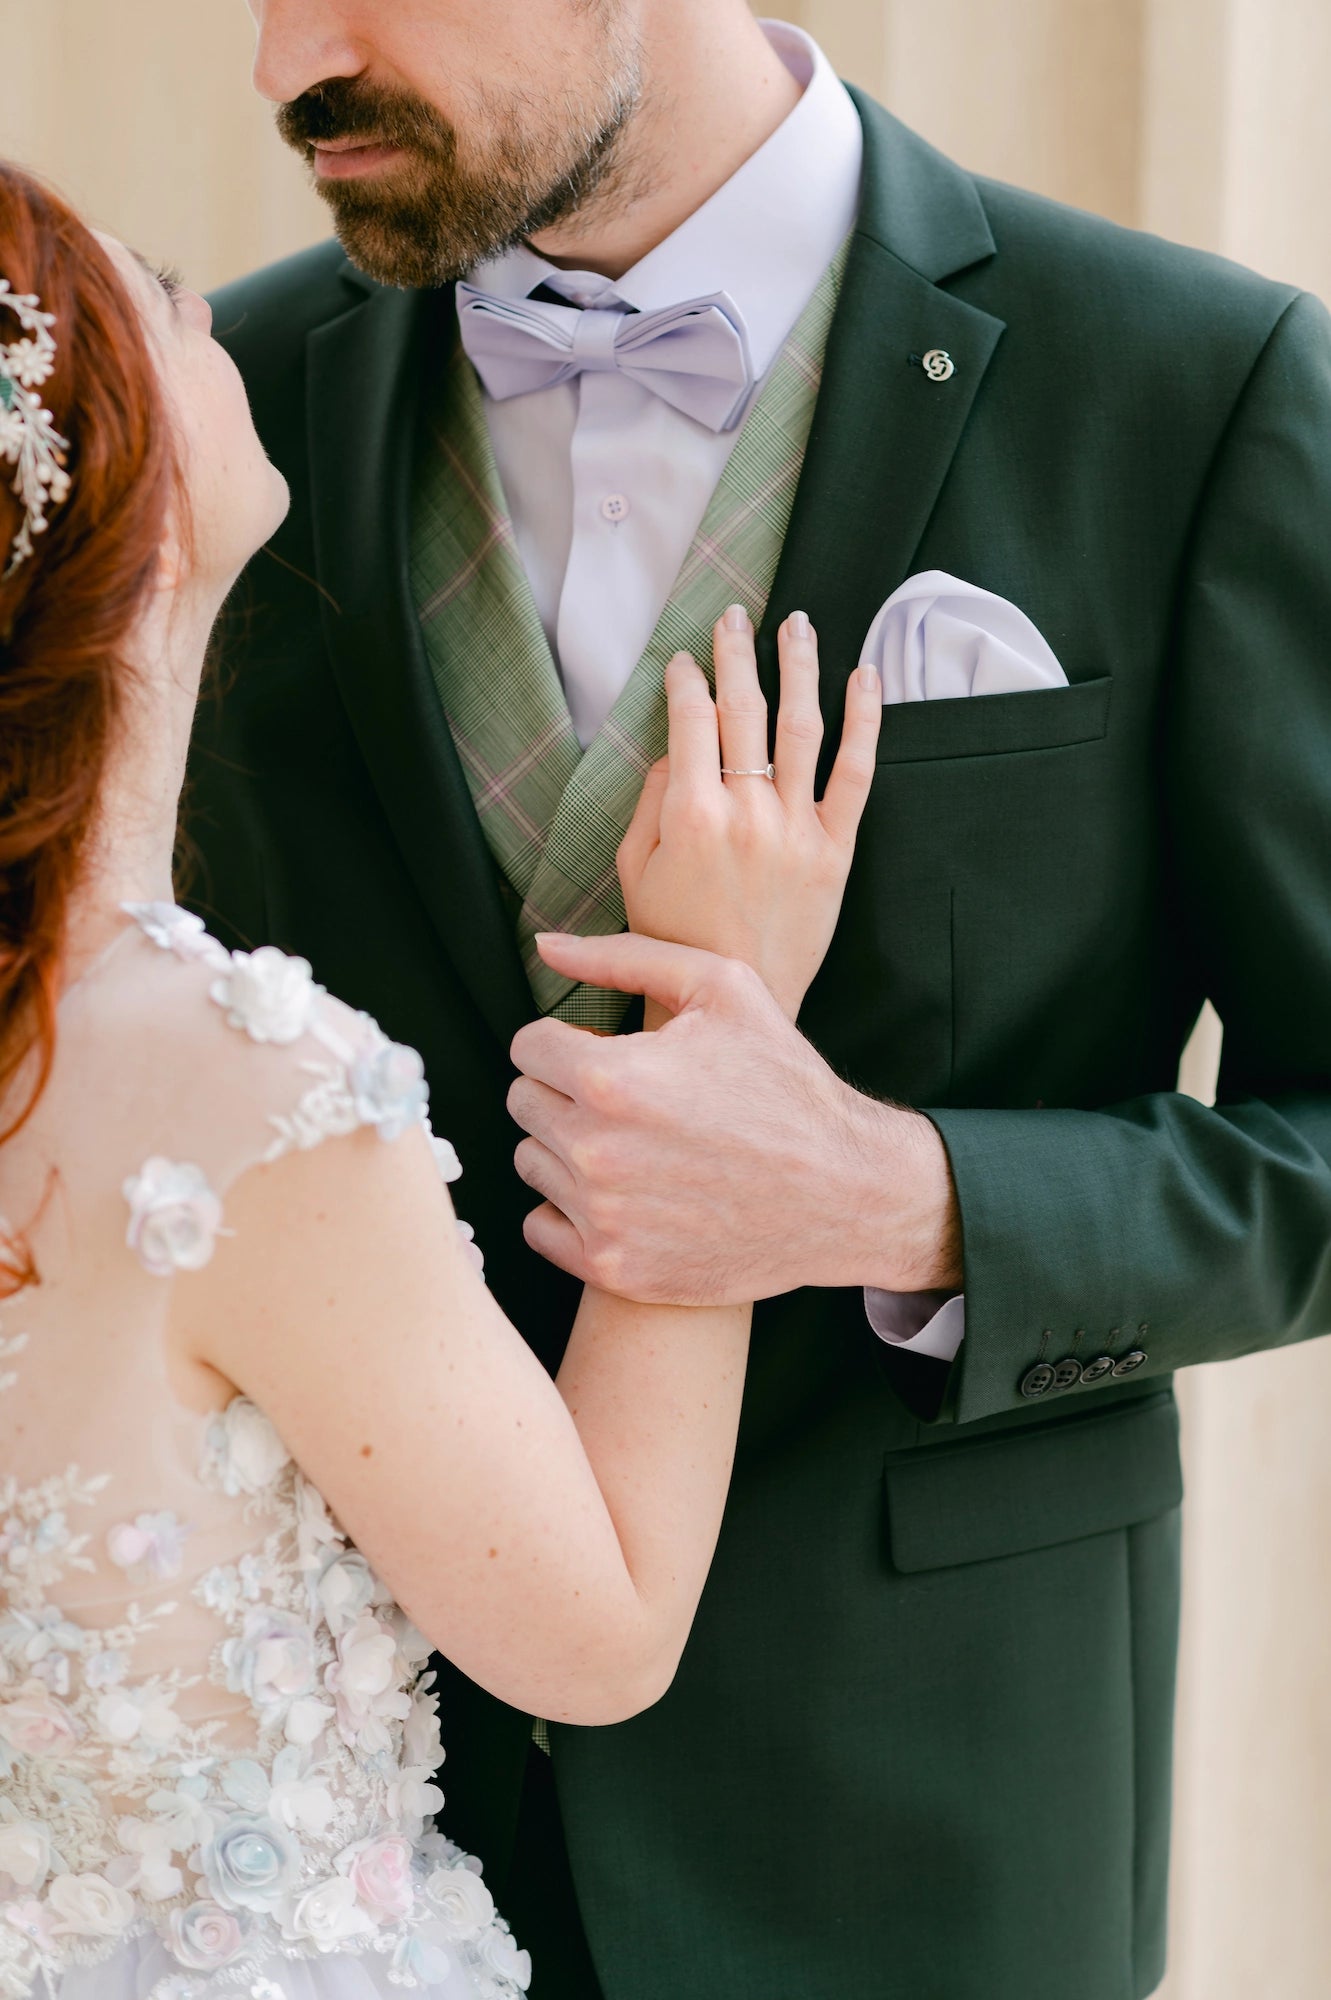 Braut legt am Hochzeitstag ihre Hand auf die Brust des Bräutigams in seinem grünen Anzug